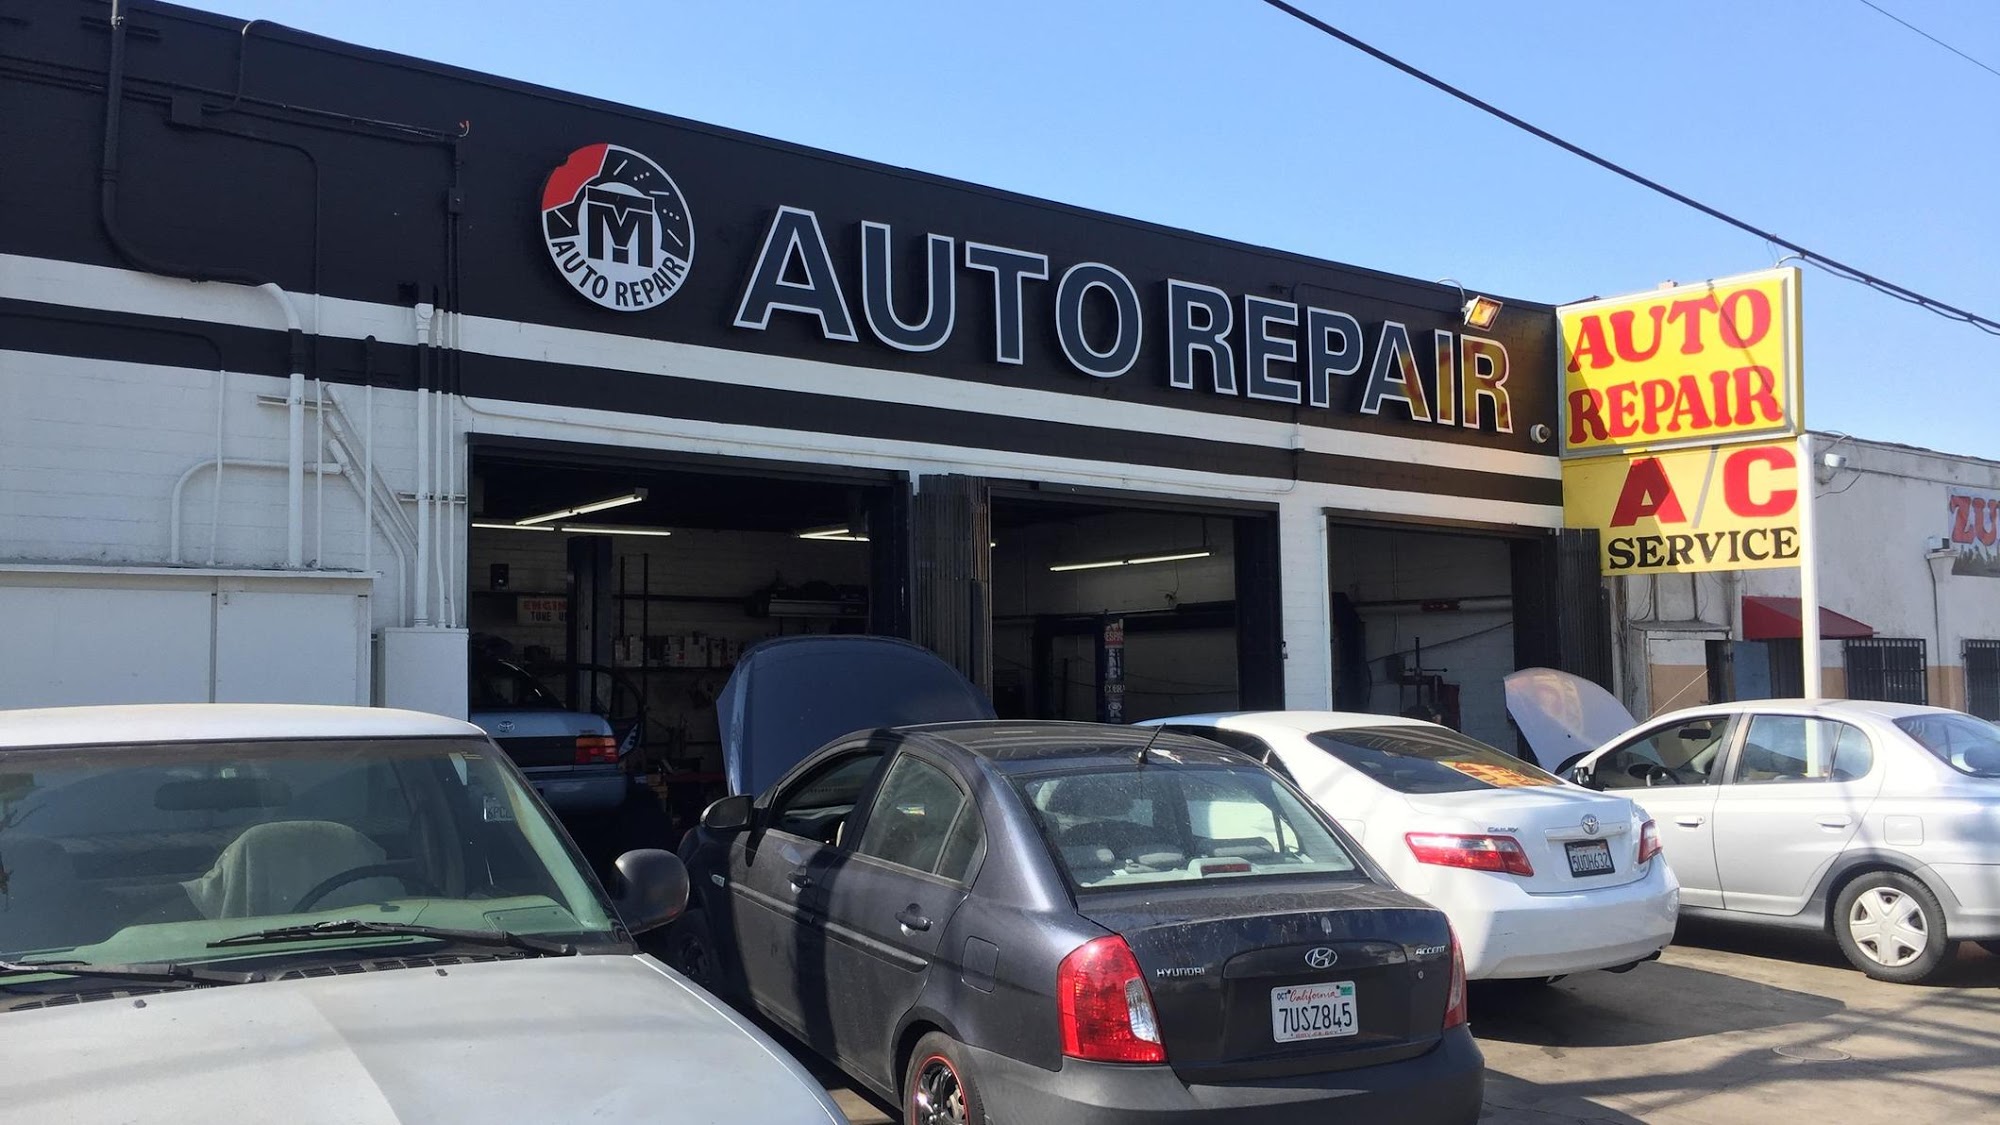 MT Auto Repair